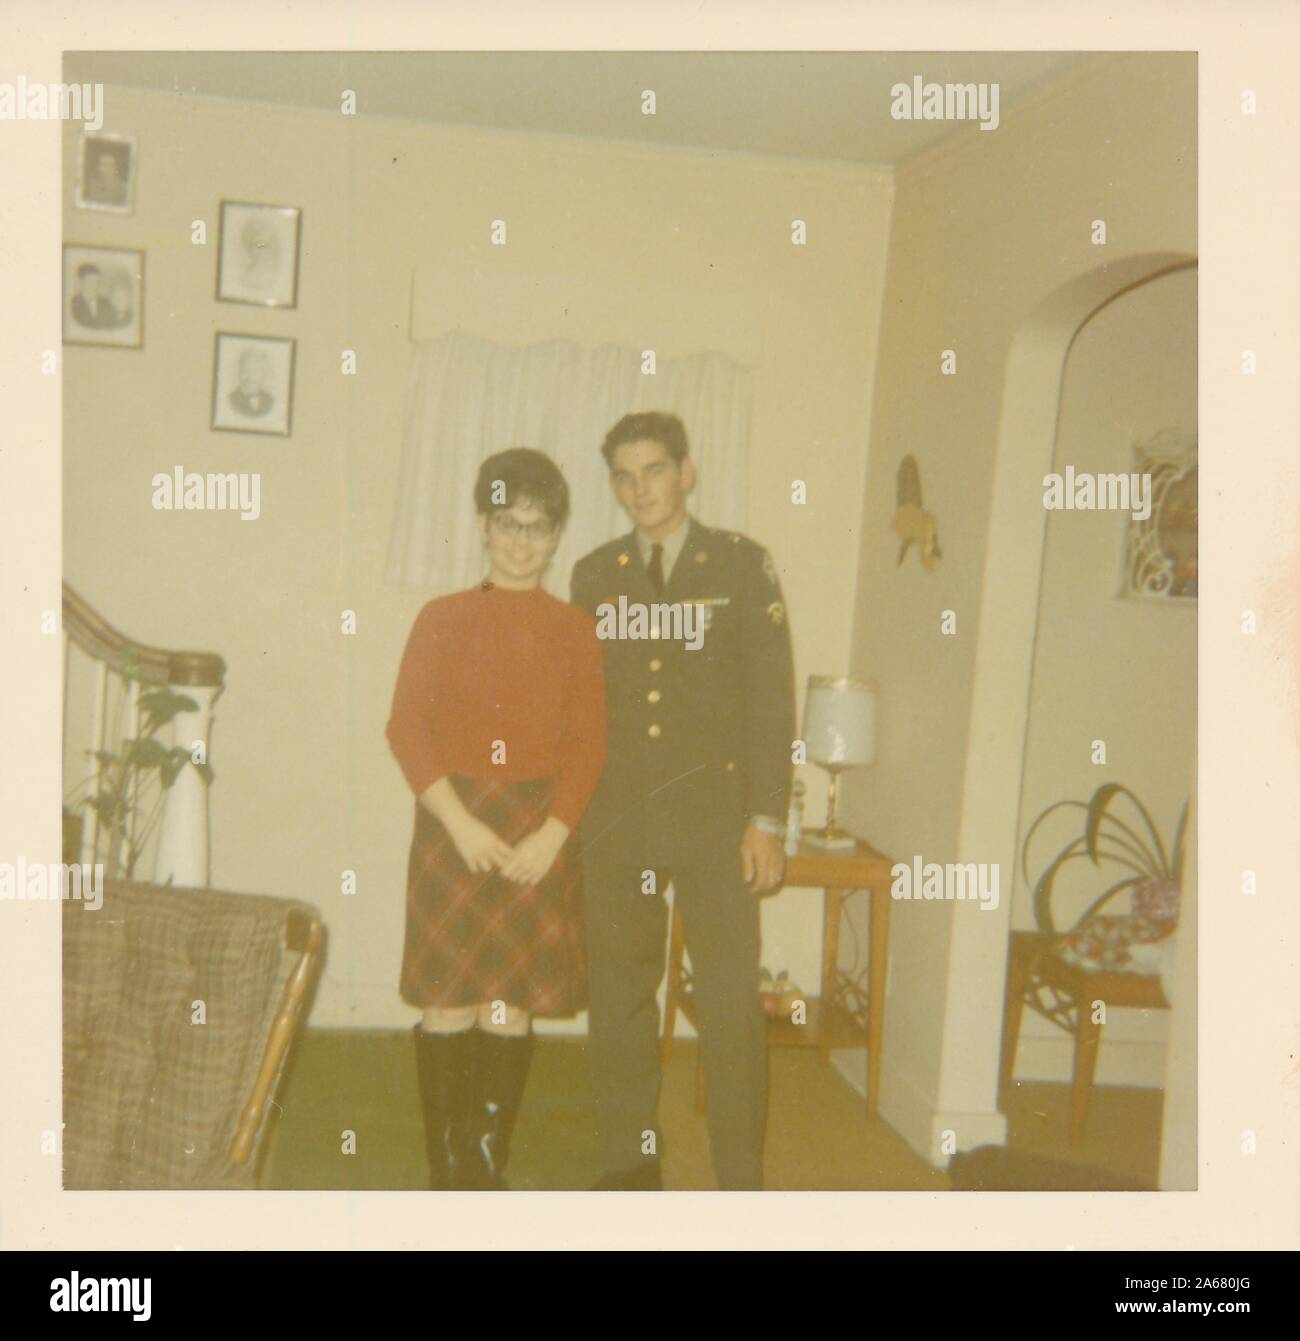 Disparo completo de un militar uniformado posando con una joven sonriente, ambos frente a la cámara, mientras se encuentra cerca de la base de una escalera en una sala de estar suburbana, Estados Unidos de América, 1965. () Foto de stock